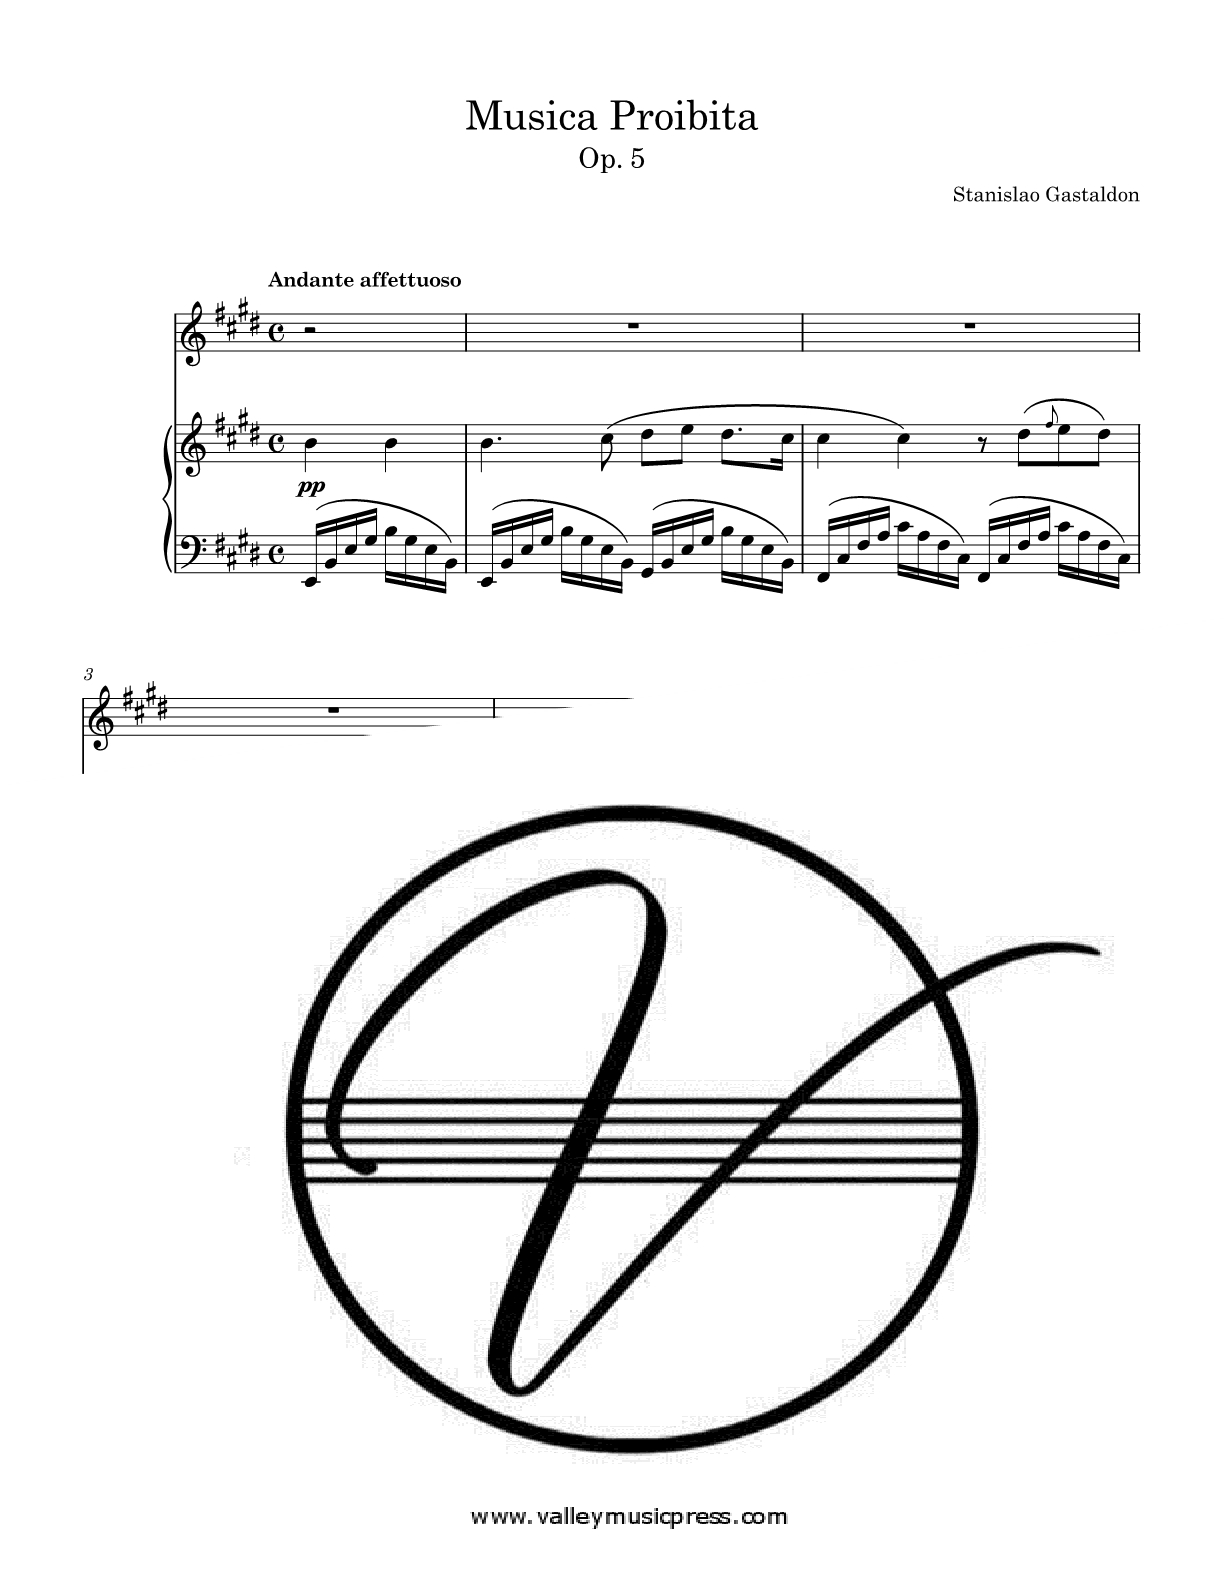 Gastaldon - Musica proibita, Op. 5 (Voice)